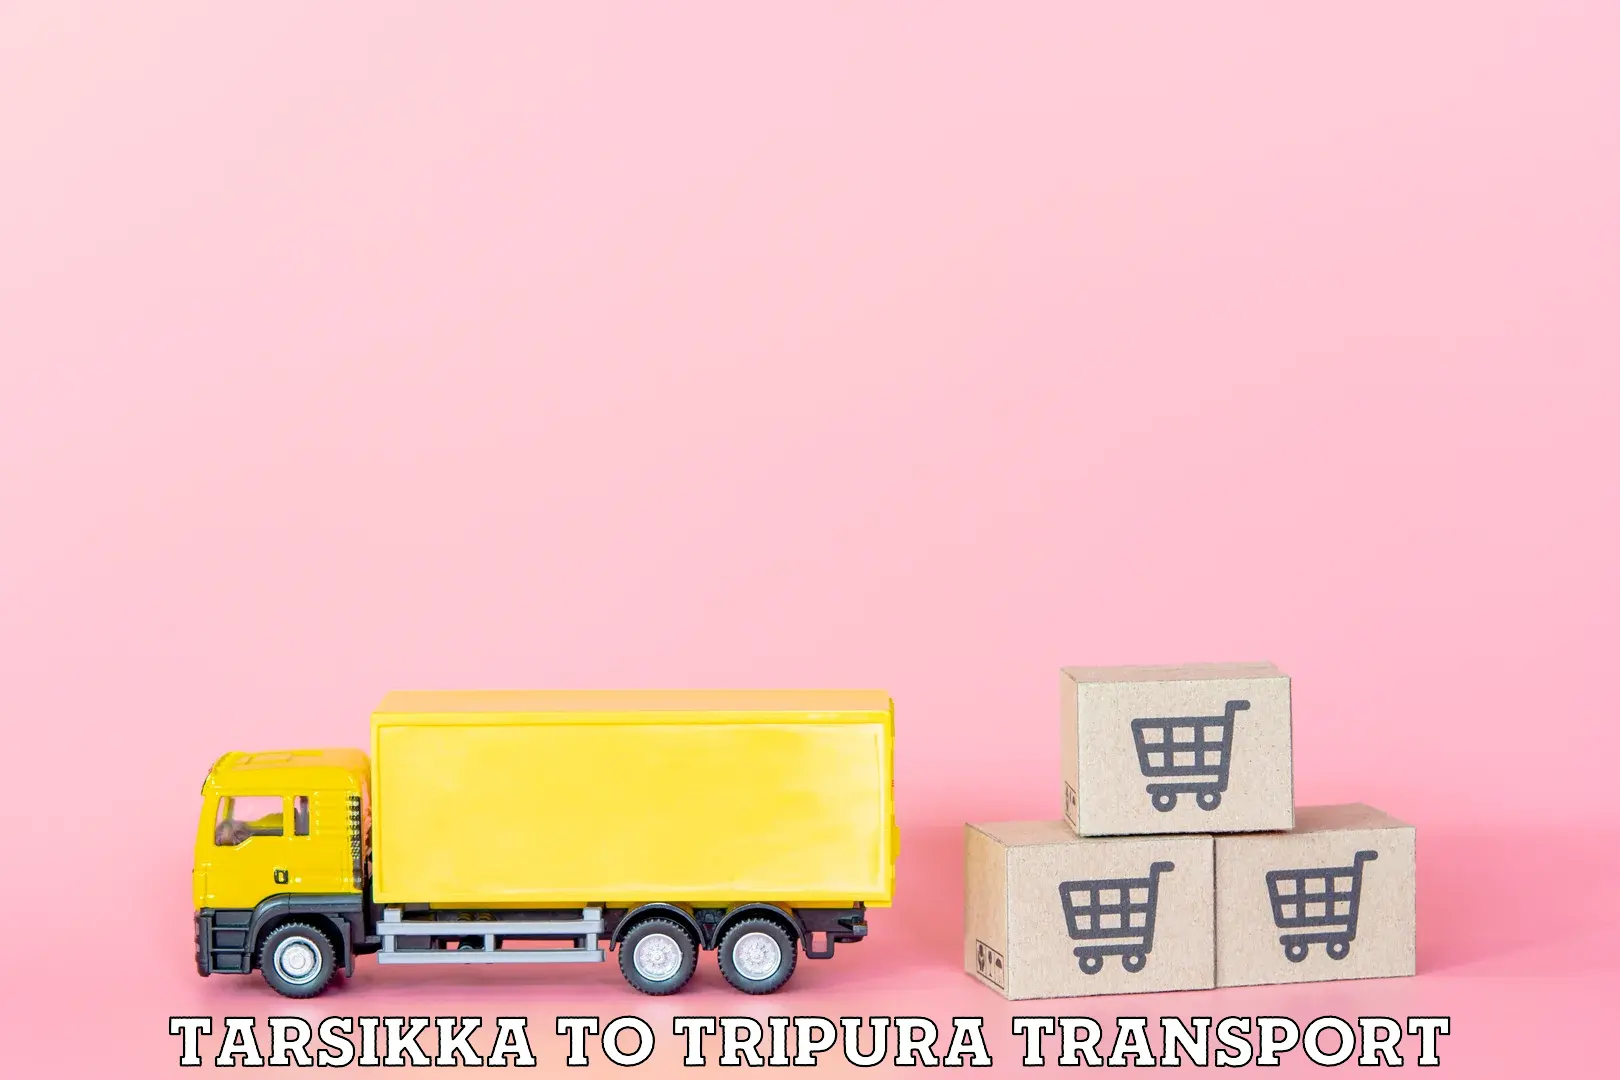 India truck logistics services Tarsikka to Aambasa